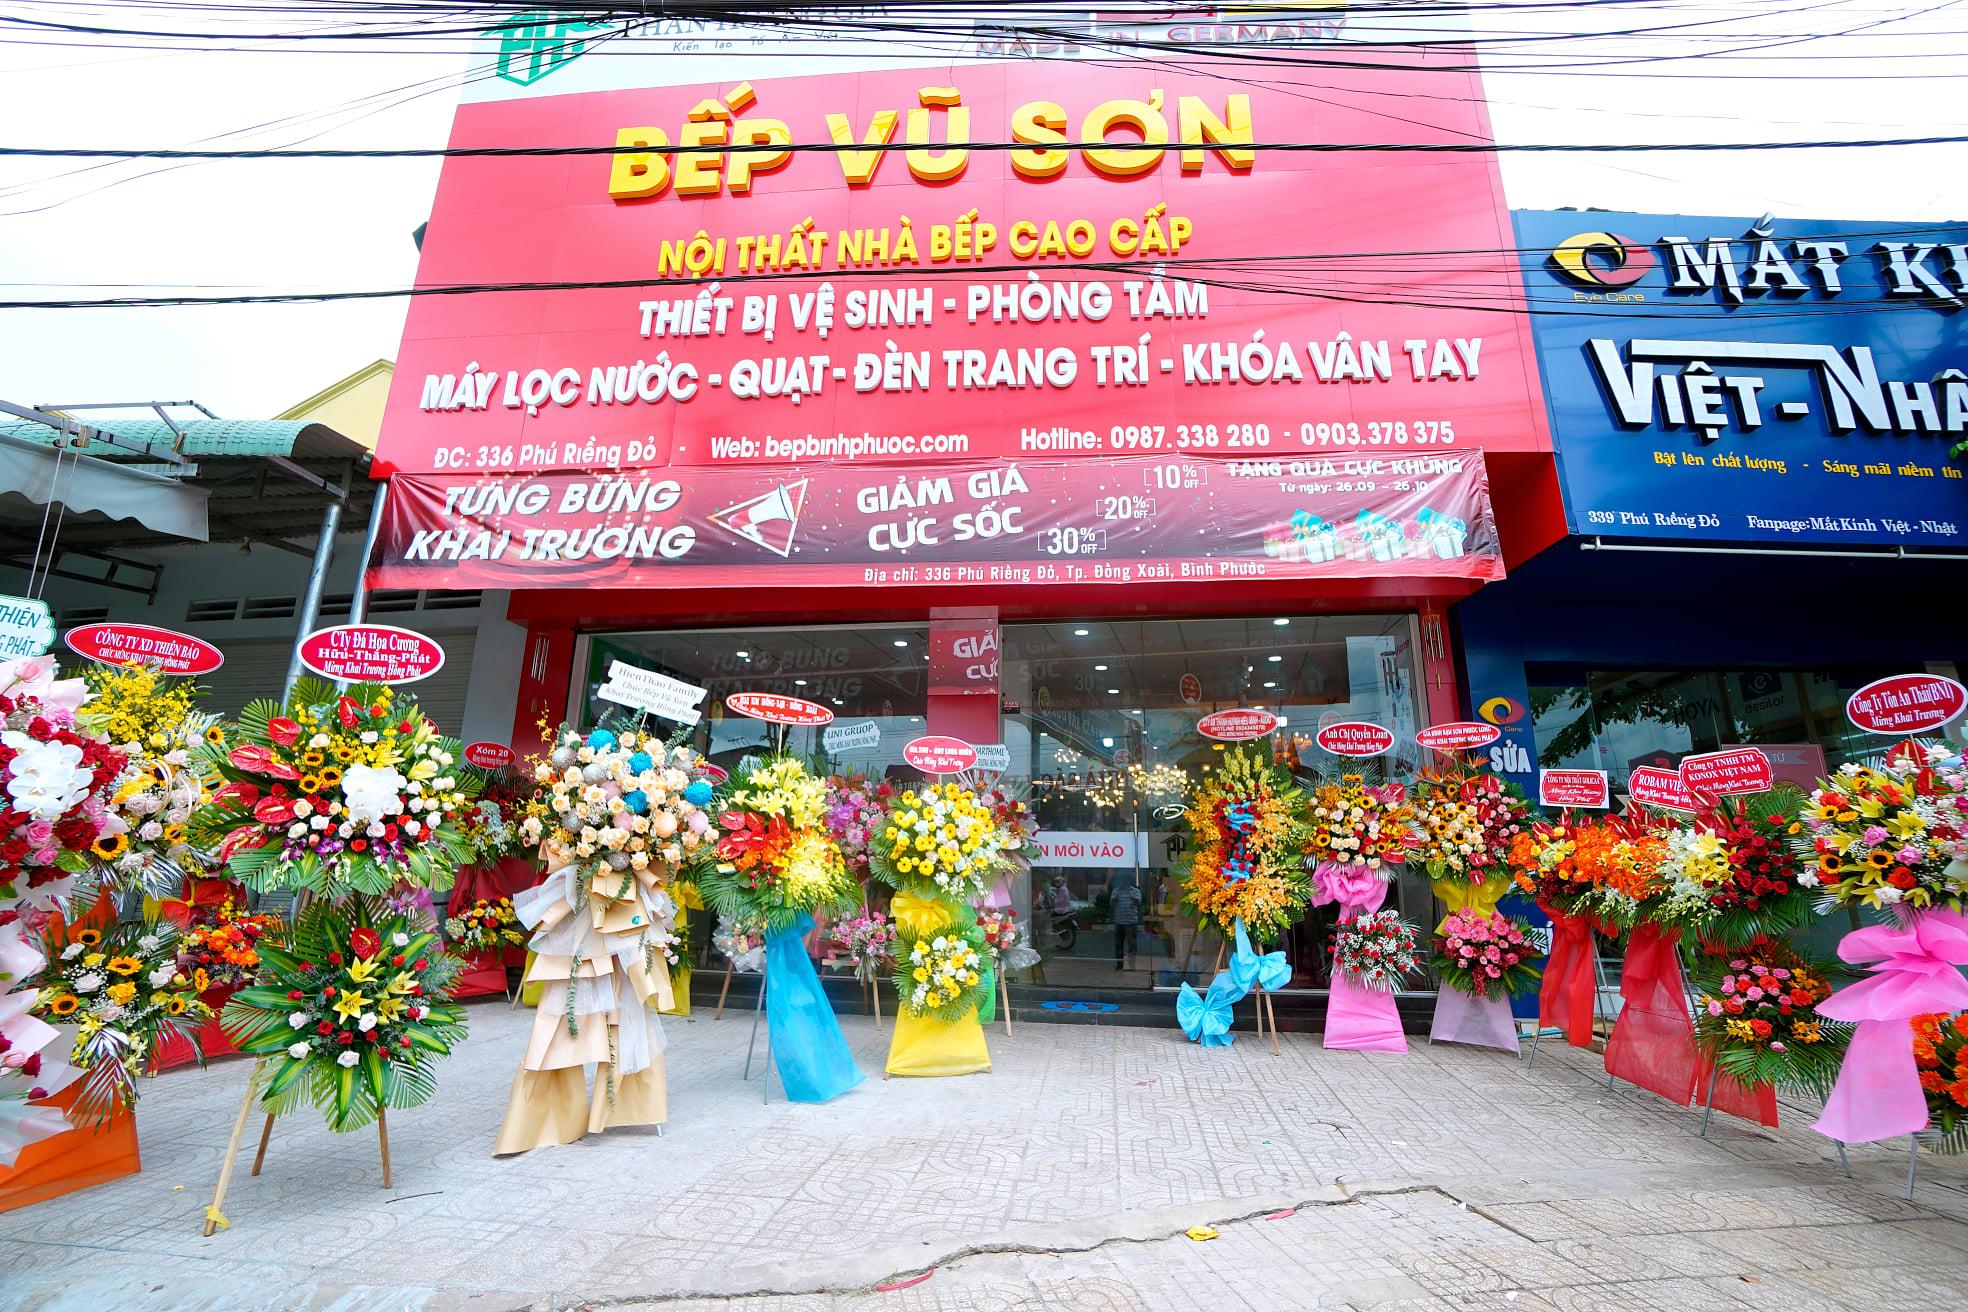 Showroom Bếp Vũ Sơn tại Đồng Xoài | Địa Điểm Bình Phước